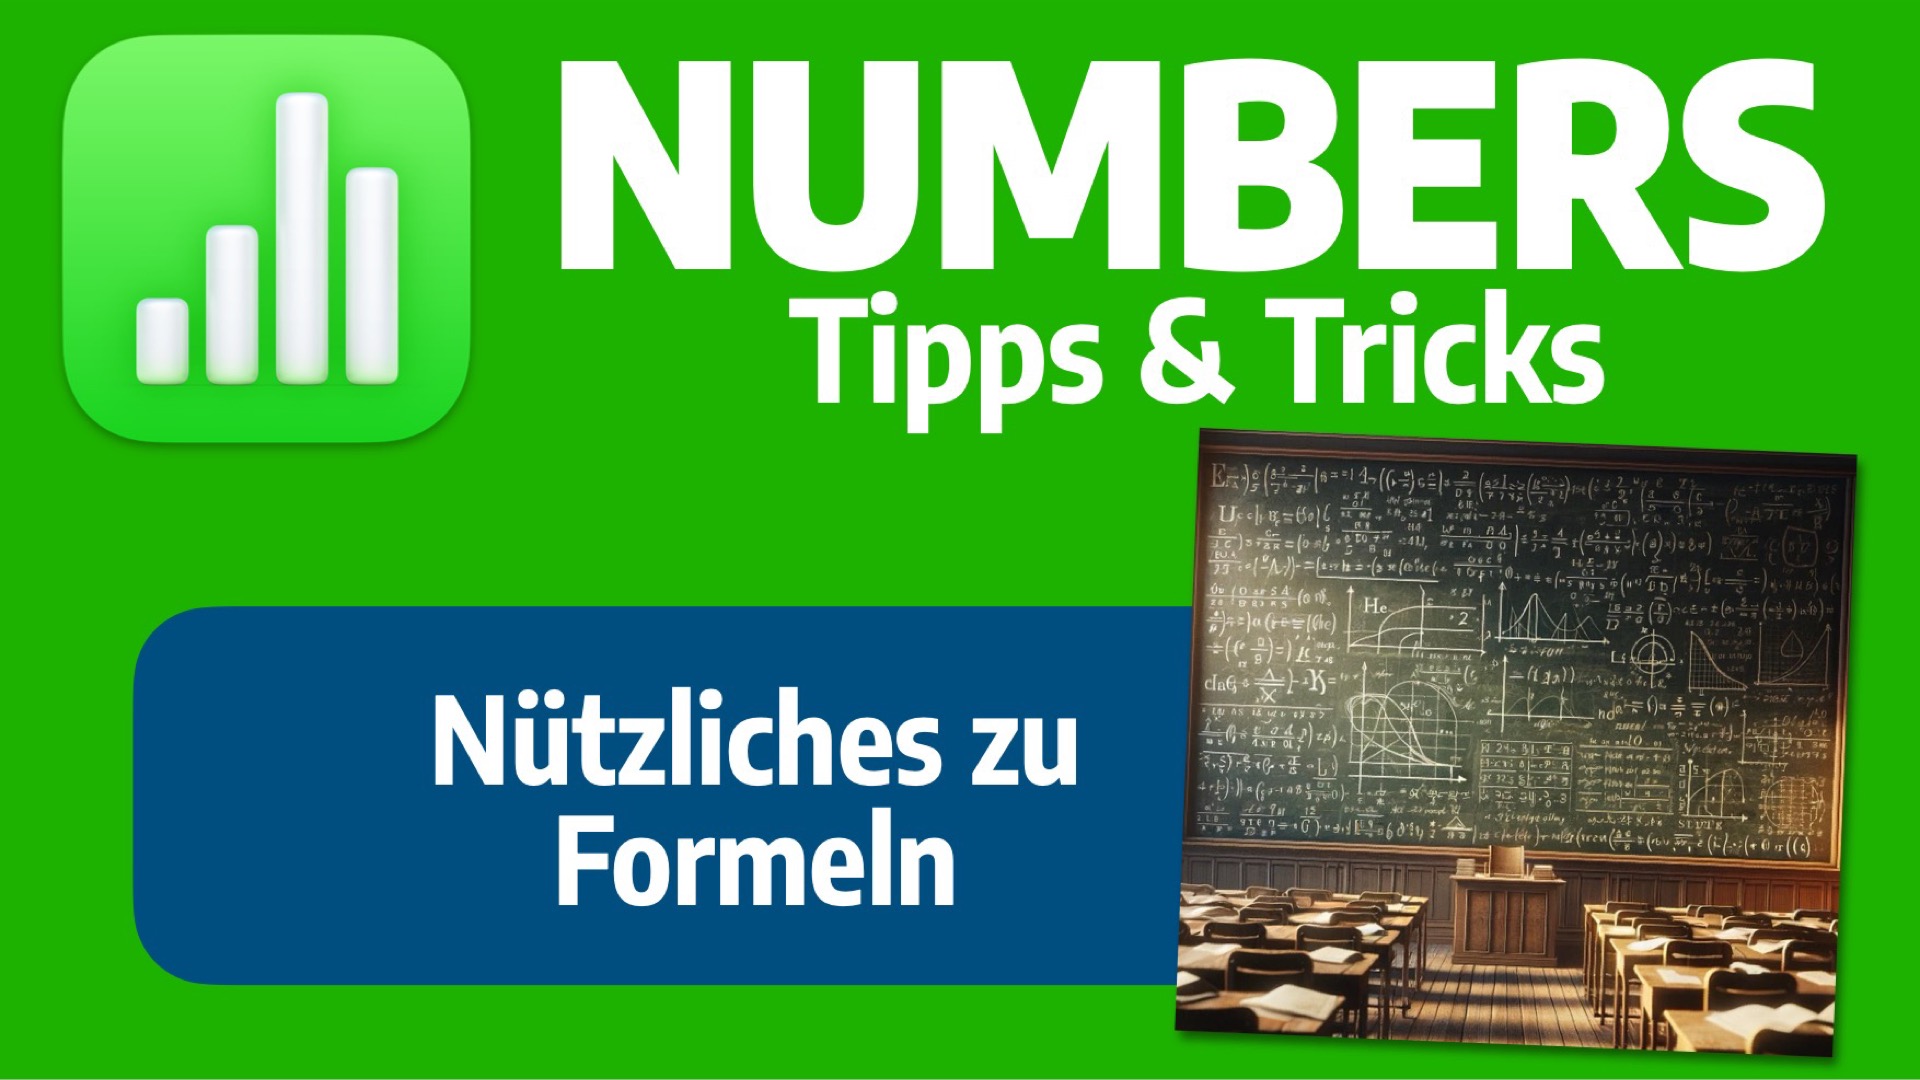 Image for NUMBERS: Nützliches zu Formeln